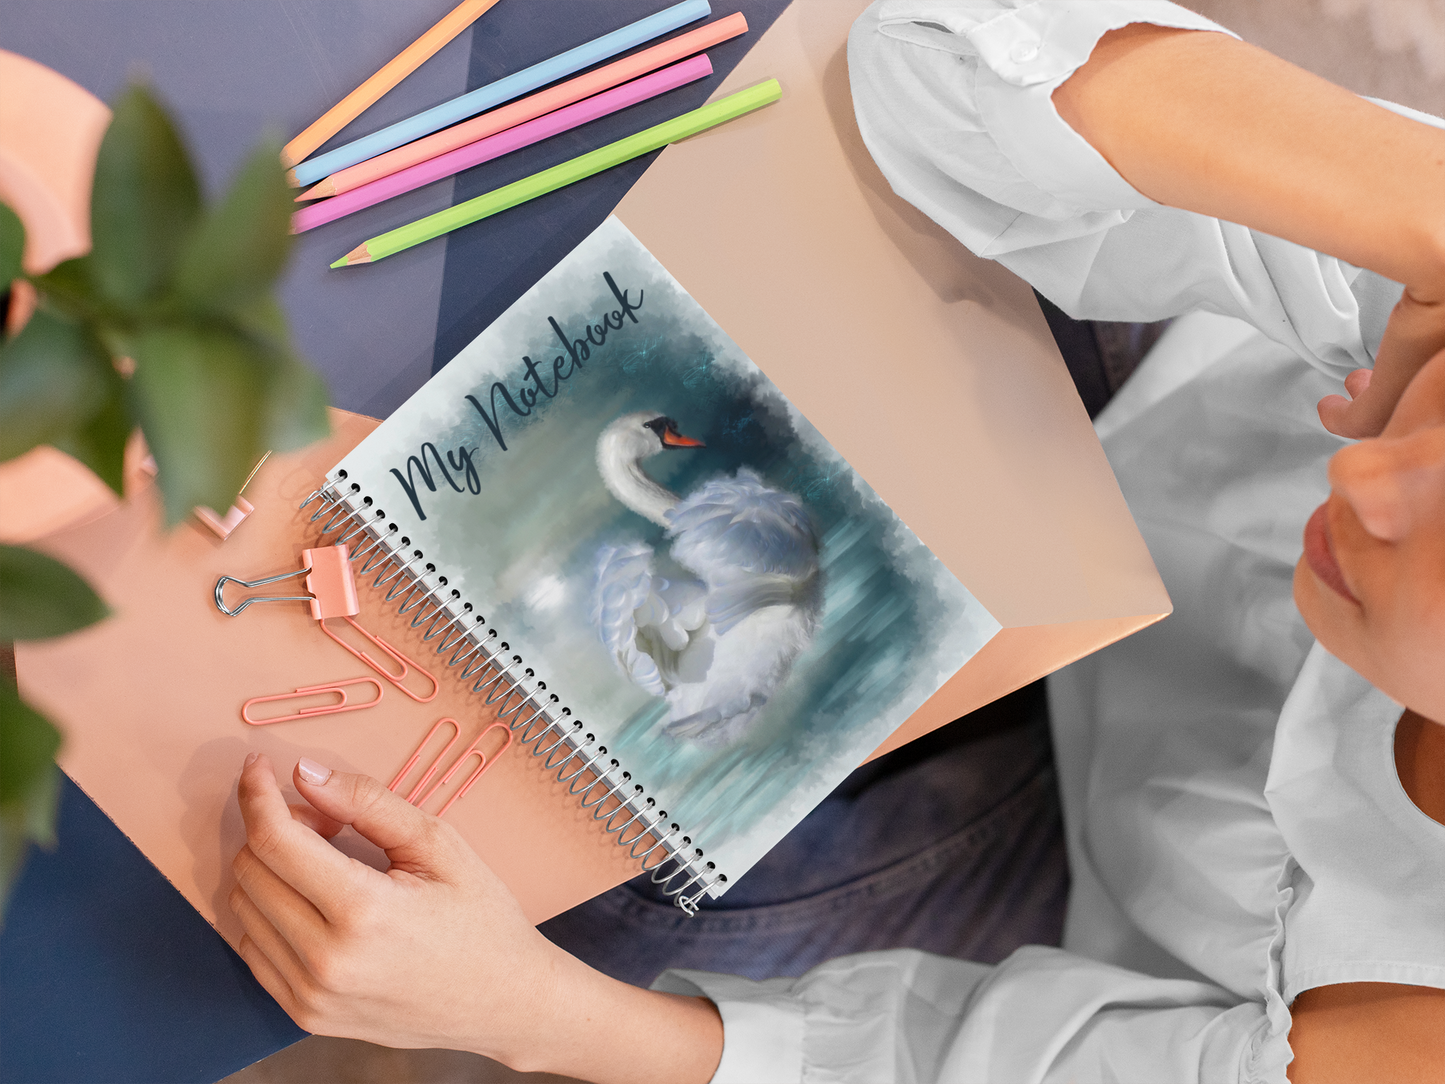 British Wildlife Art Swan Notebook Gift Idea